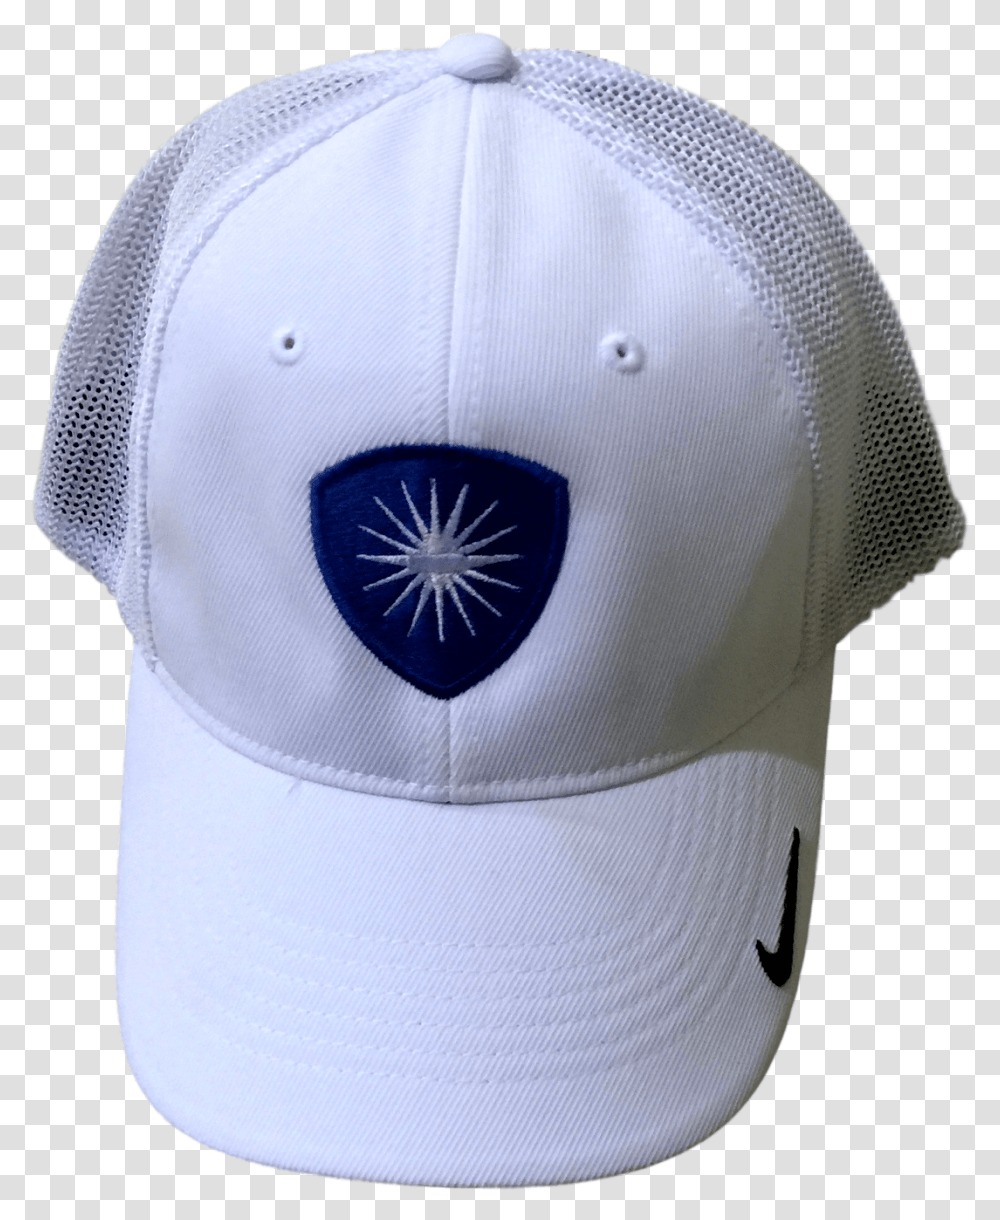 White Nike Hat - Desert Christian Academy For Baseball, Clothing, Apparel, Baseball Cap Transparent Png